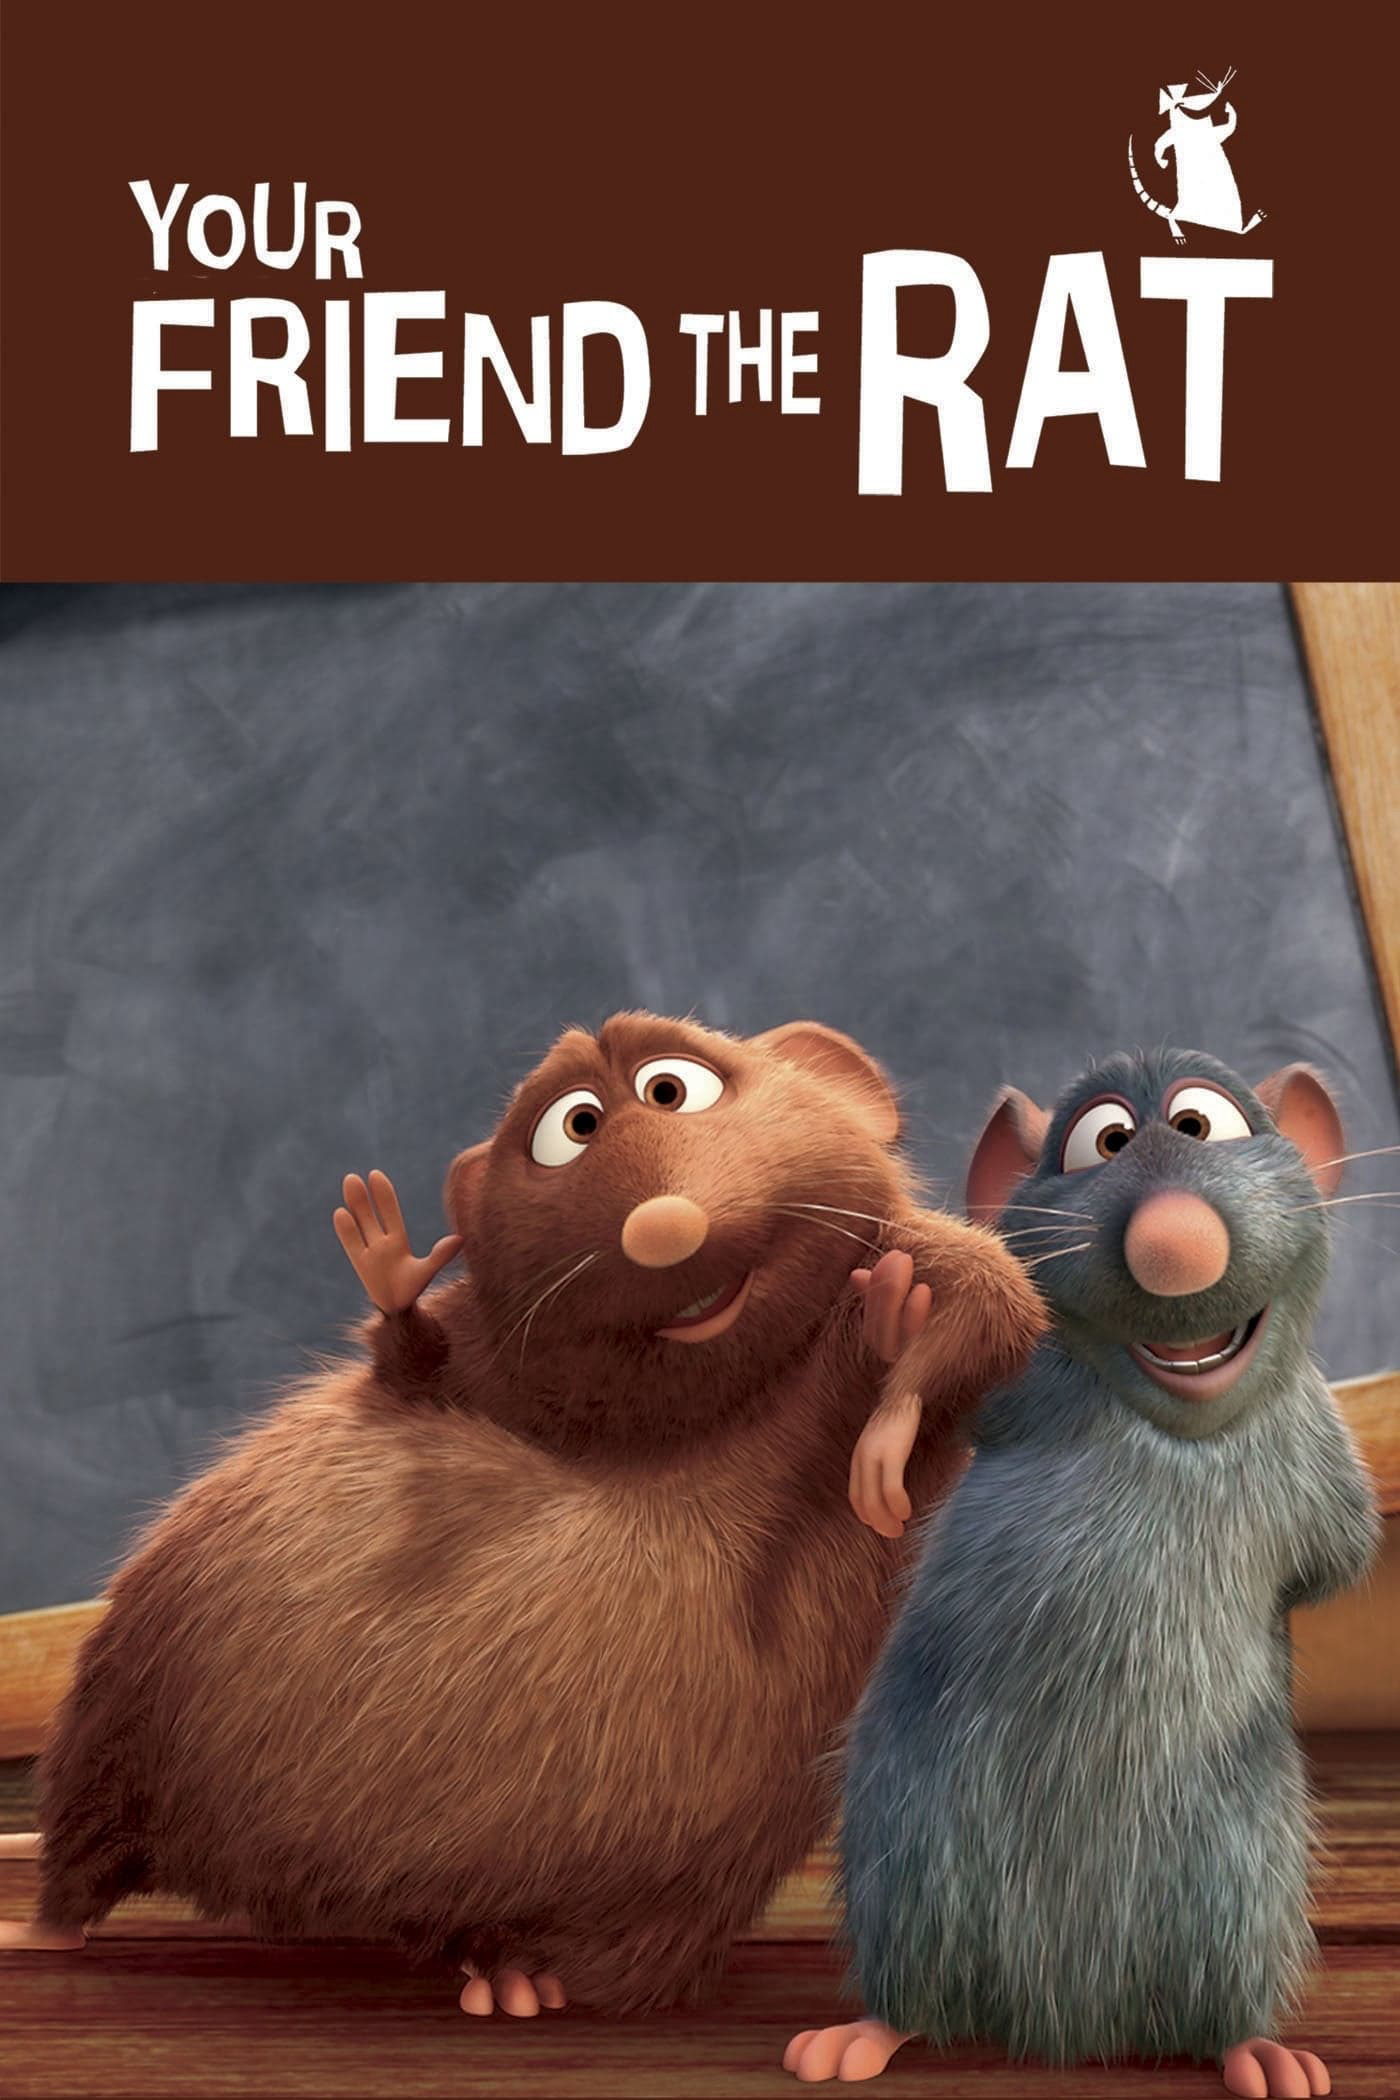 Your Friend the Rat - Your Friend the Rat (2007)